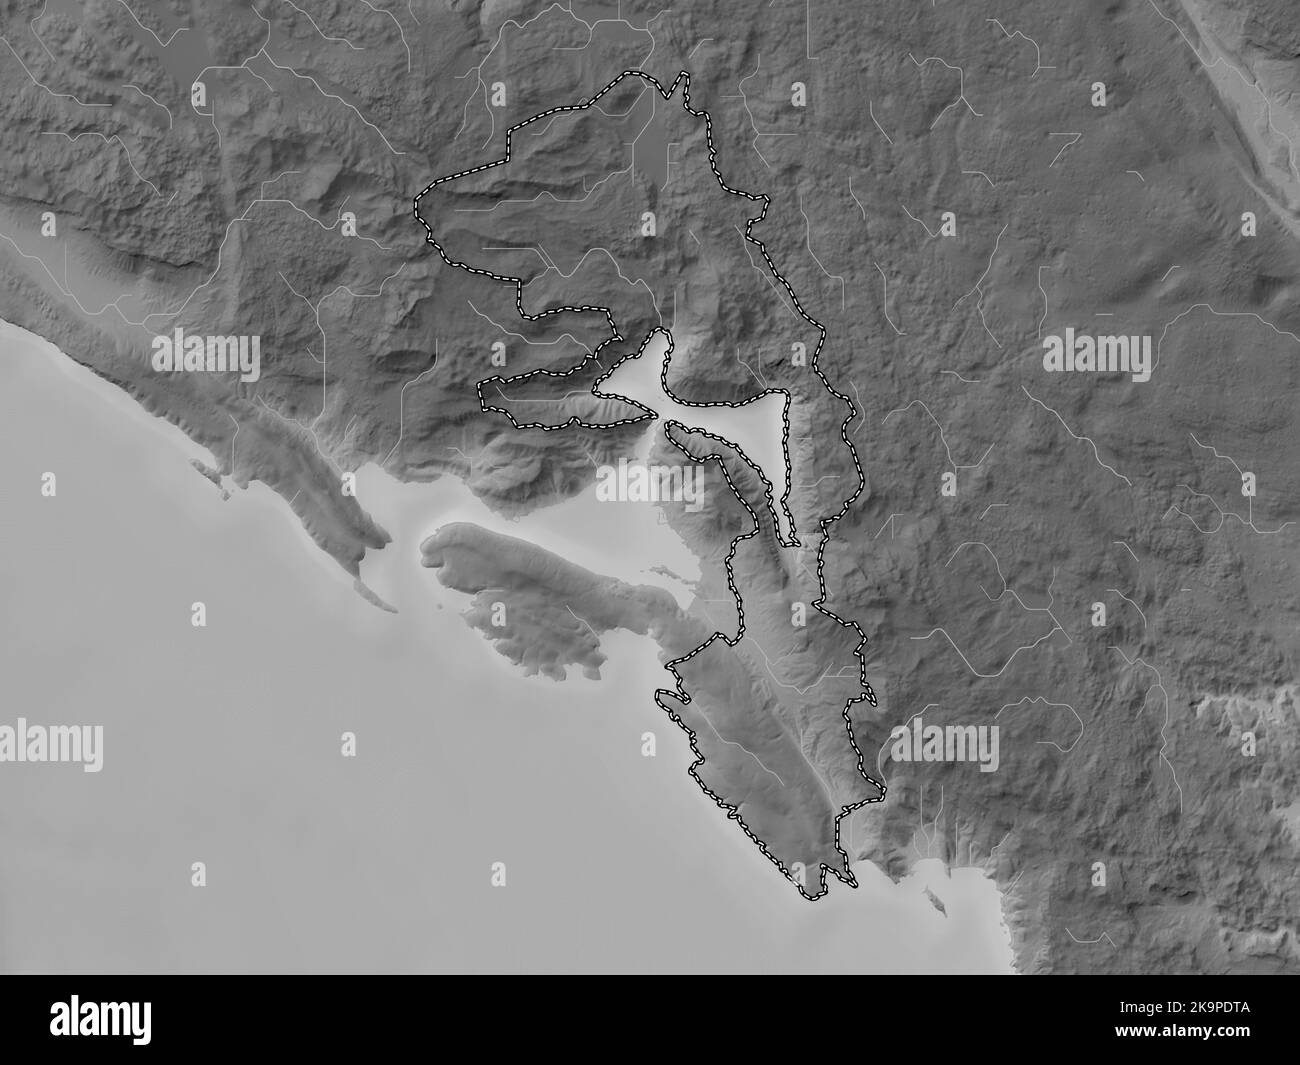 Kotor, municipalité du Monténégro. Carte d'altitude en niveaux de gris avec lacs et rivières Banque D'Images